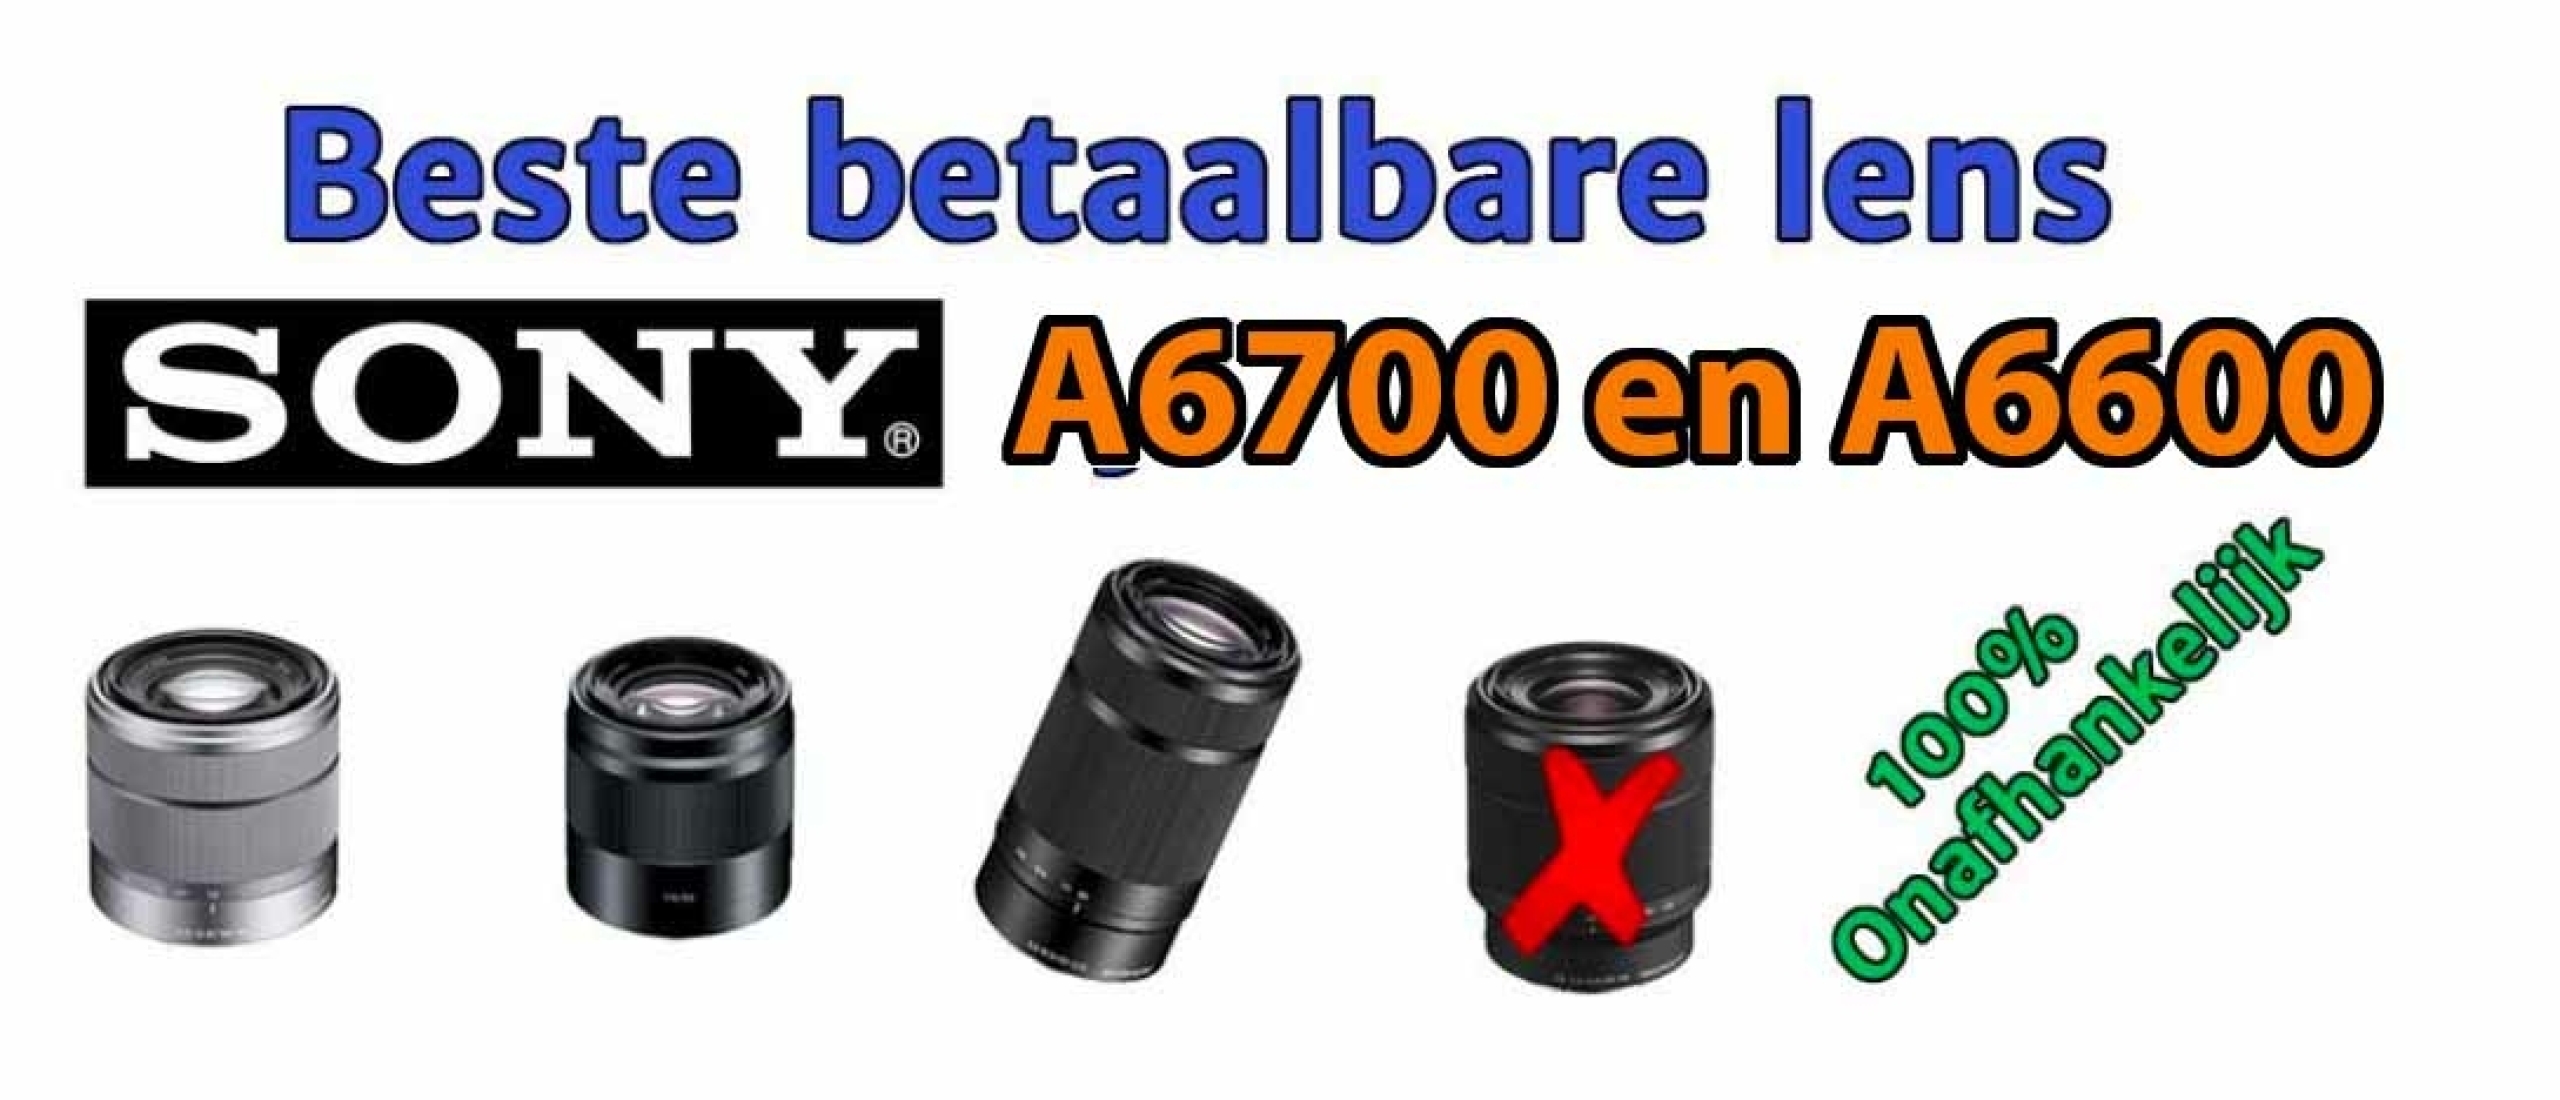 Beste betaalbare lens voor Sony A6700 en A6600